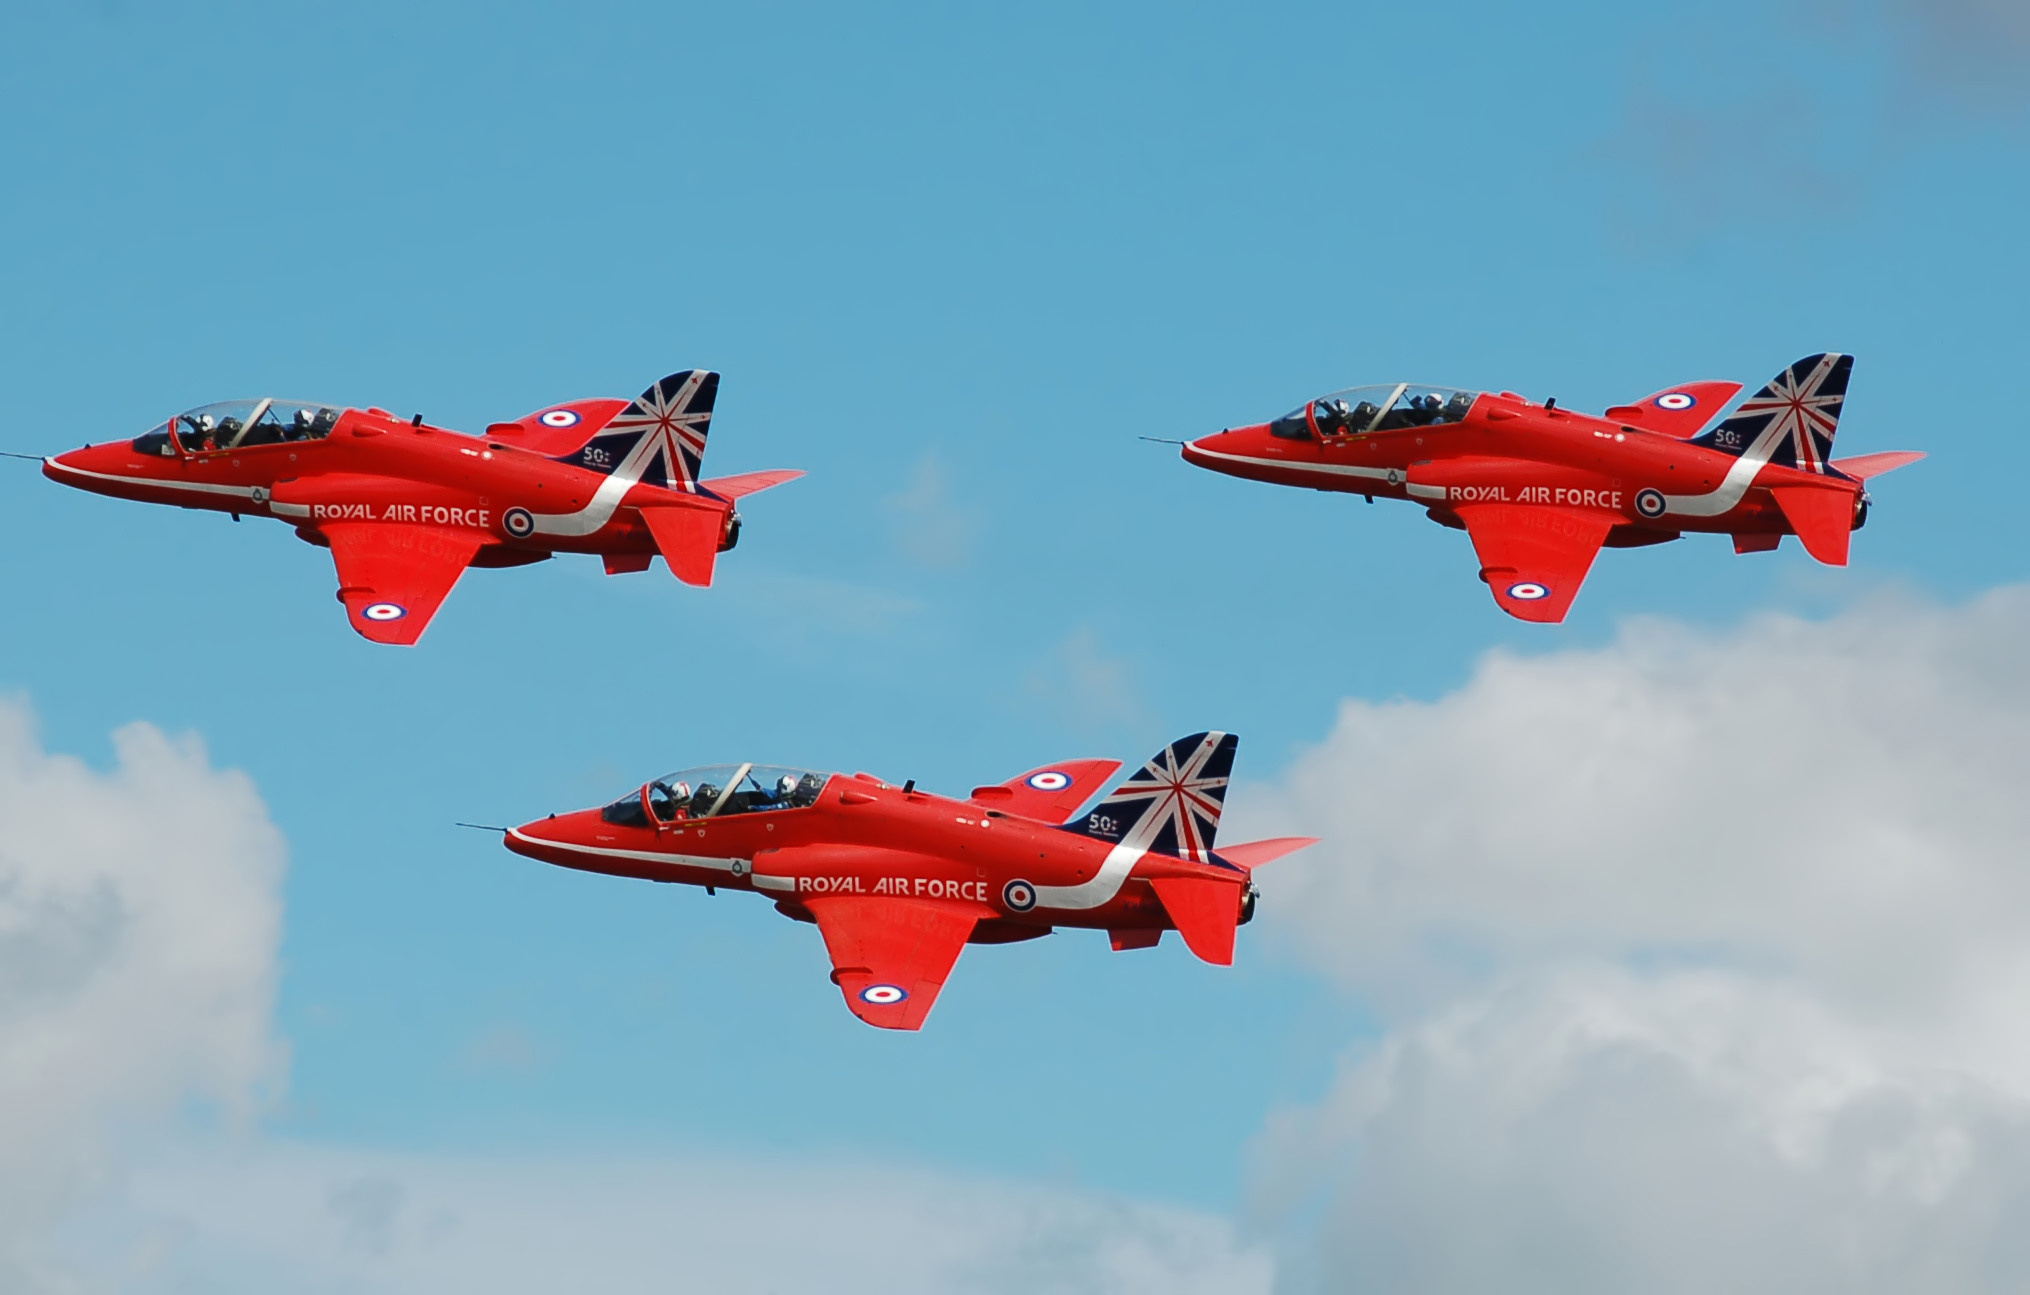 RAF Red Arrows aerobatic display team